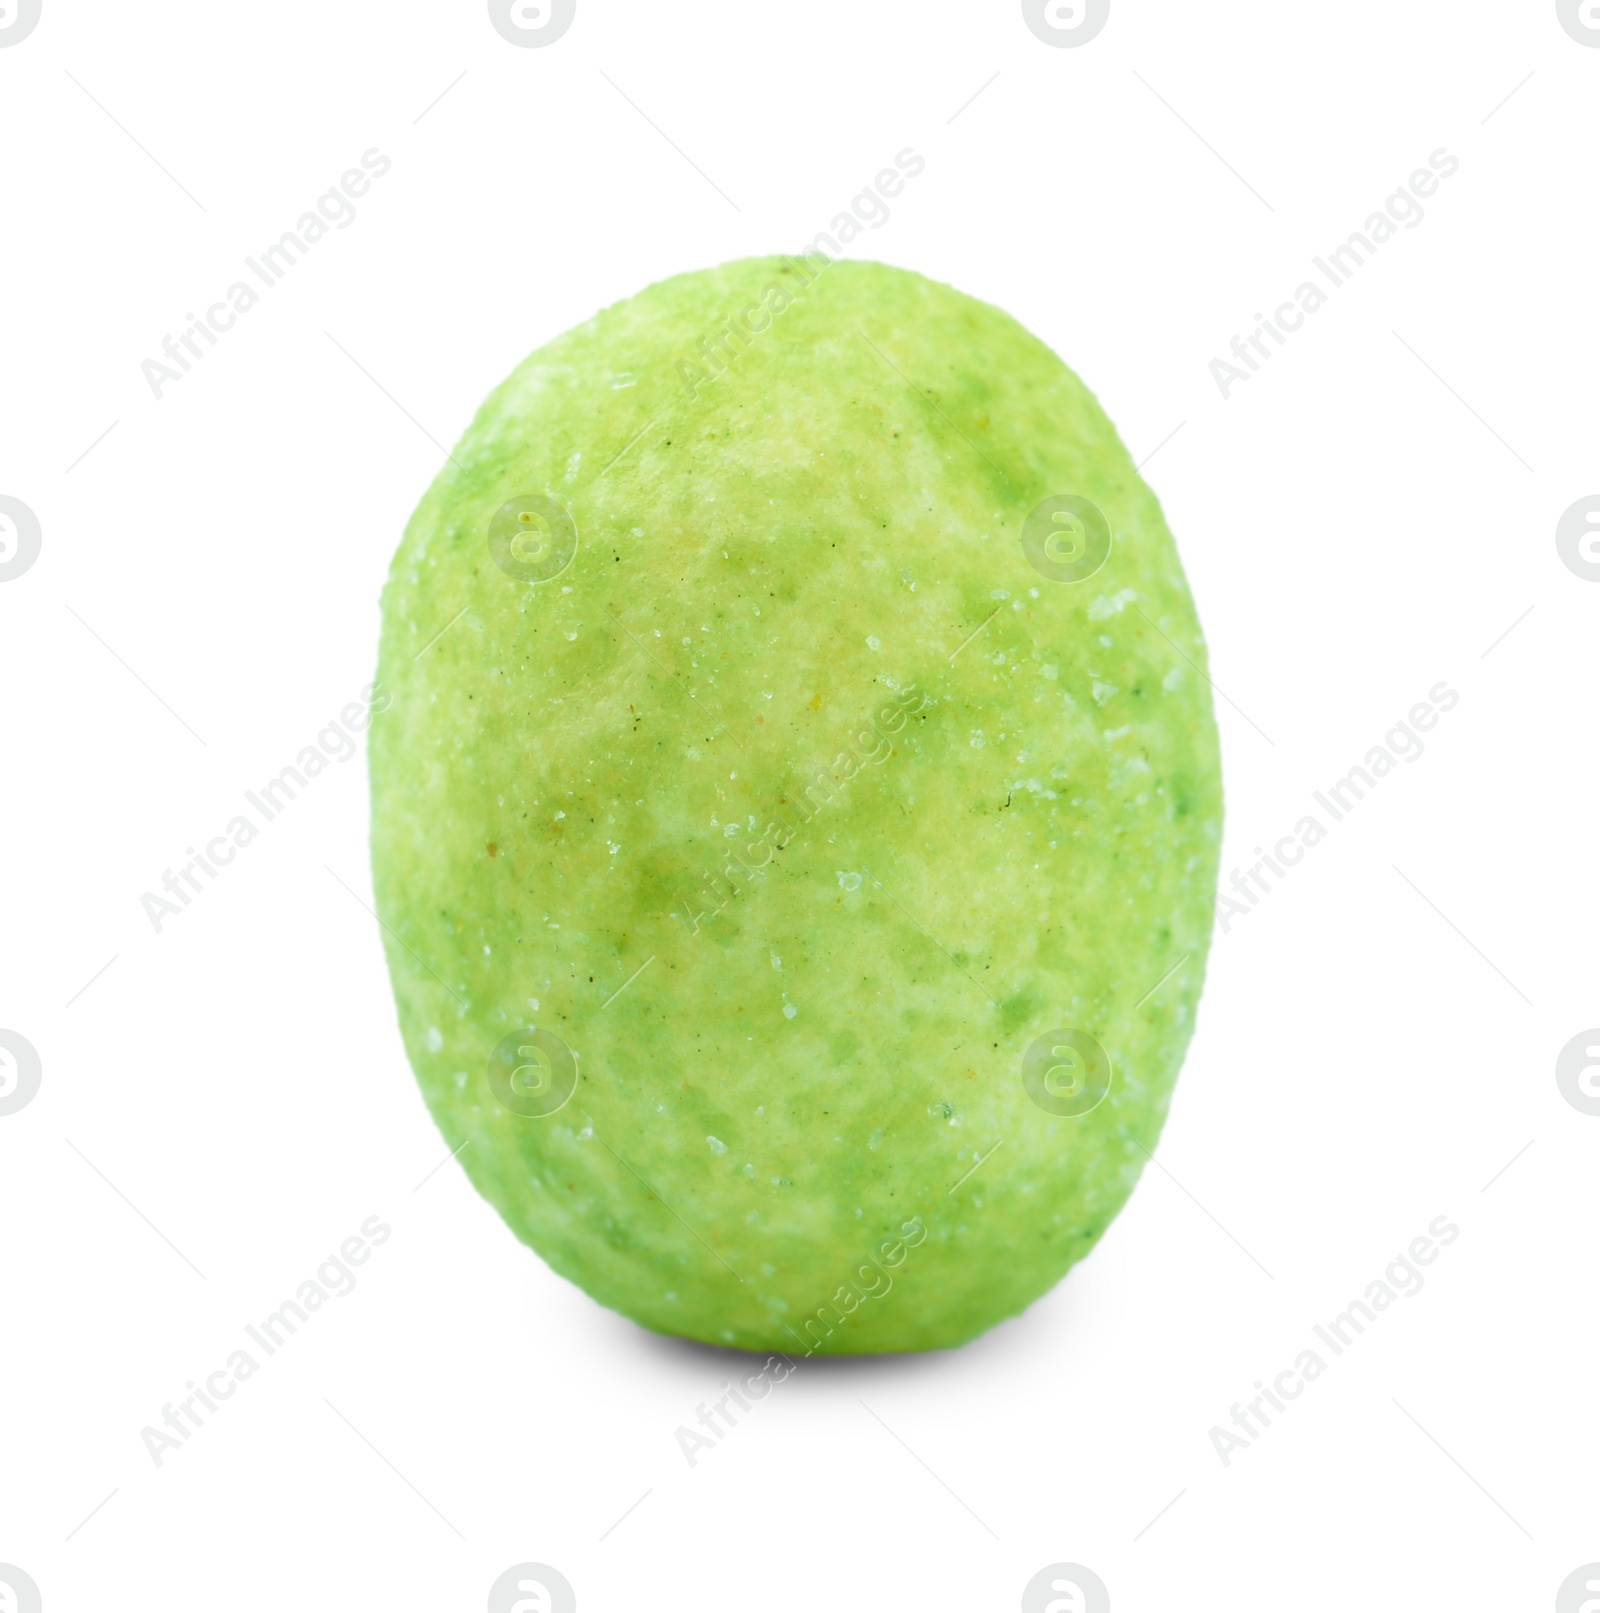 Photo of Tasty wasabi coated peanut isolated on white